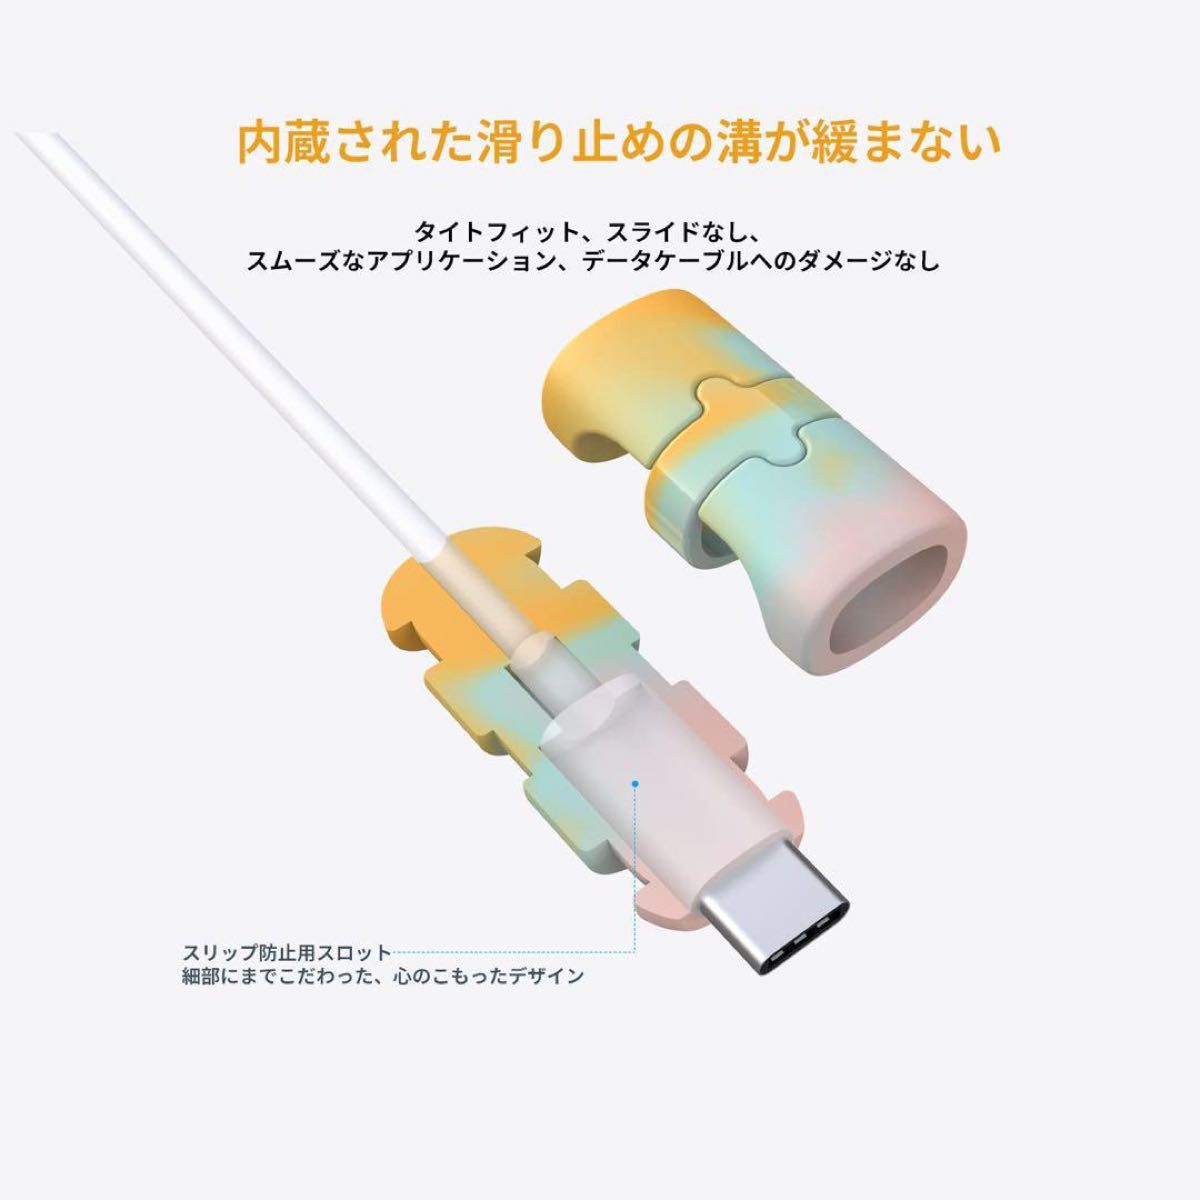 HUKWIMO ケーブル収納カバー iPhone/iPad 断線防止